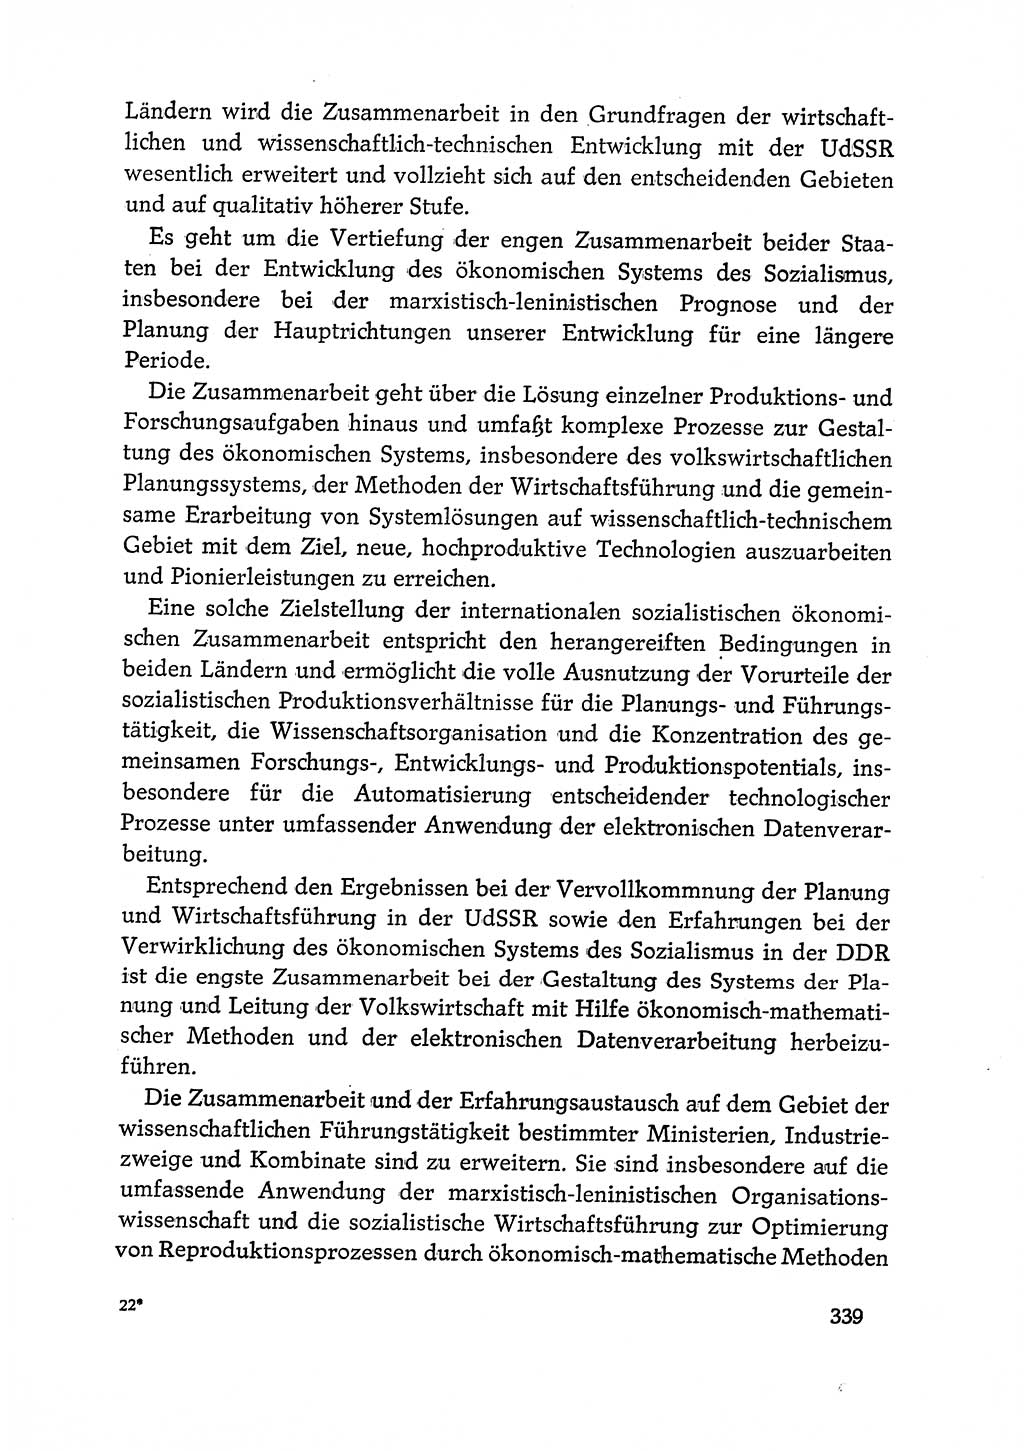 Dokumente der Sozialistischen Einheitspartei Deutschlands (SED) [Deutsche Demokratische Republik (DDR)] 1968-1969, Seite 339 (Dok. SED DDR 1968-1969, S. 339)